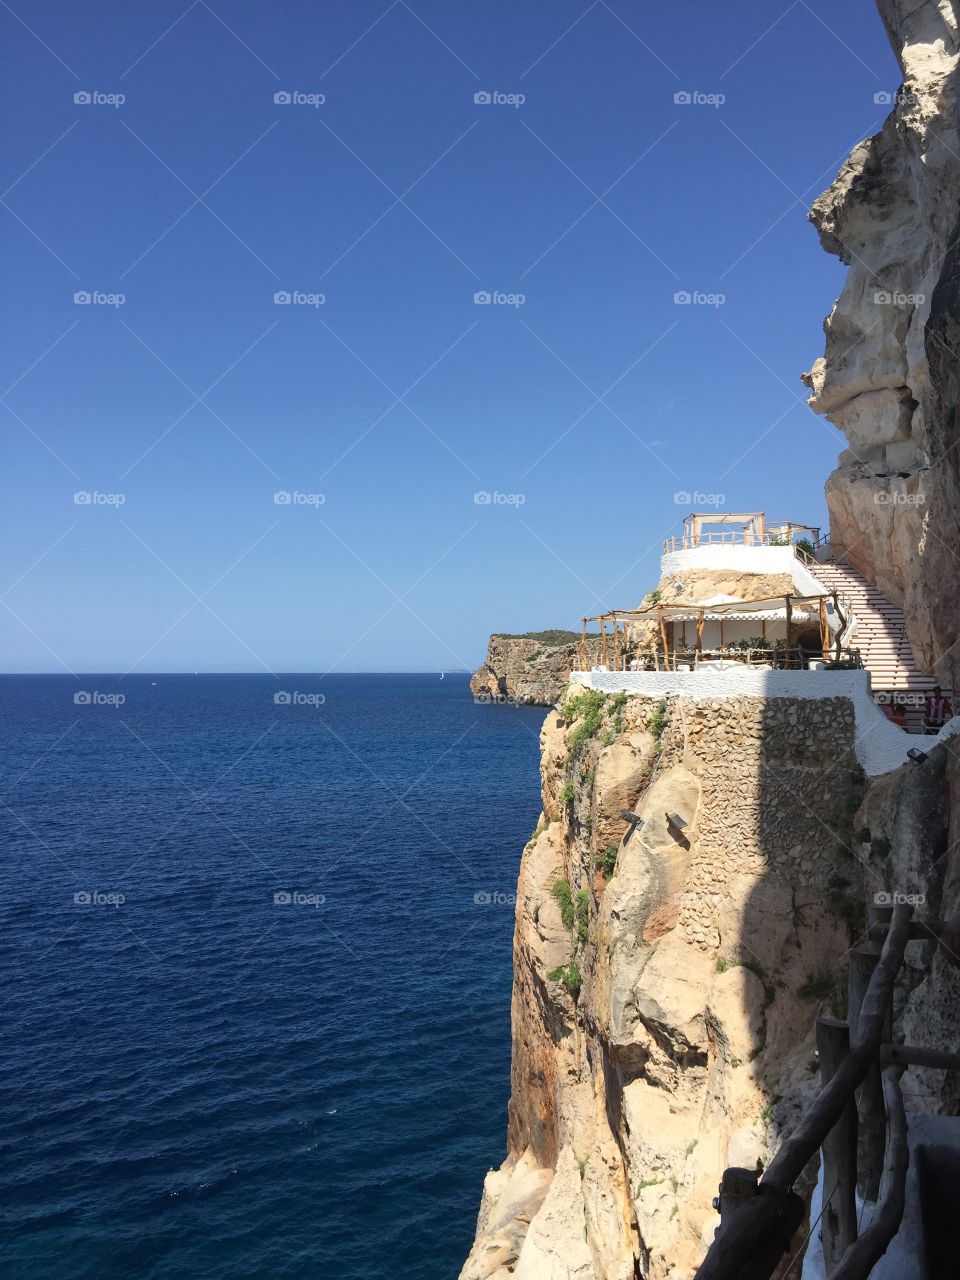 Cova d’en xoroi in Menorca ,baleares islas